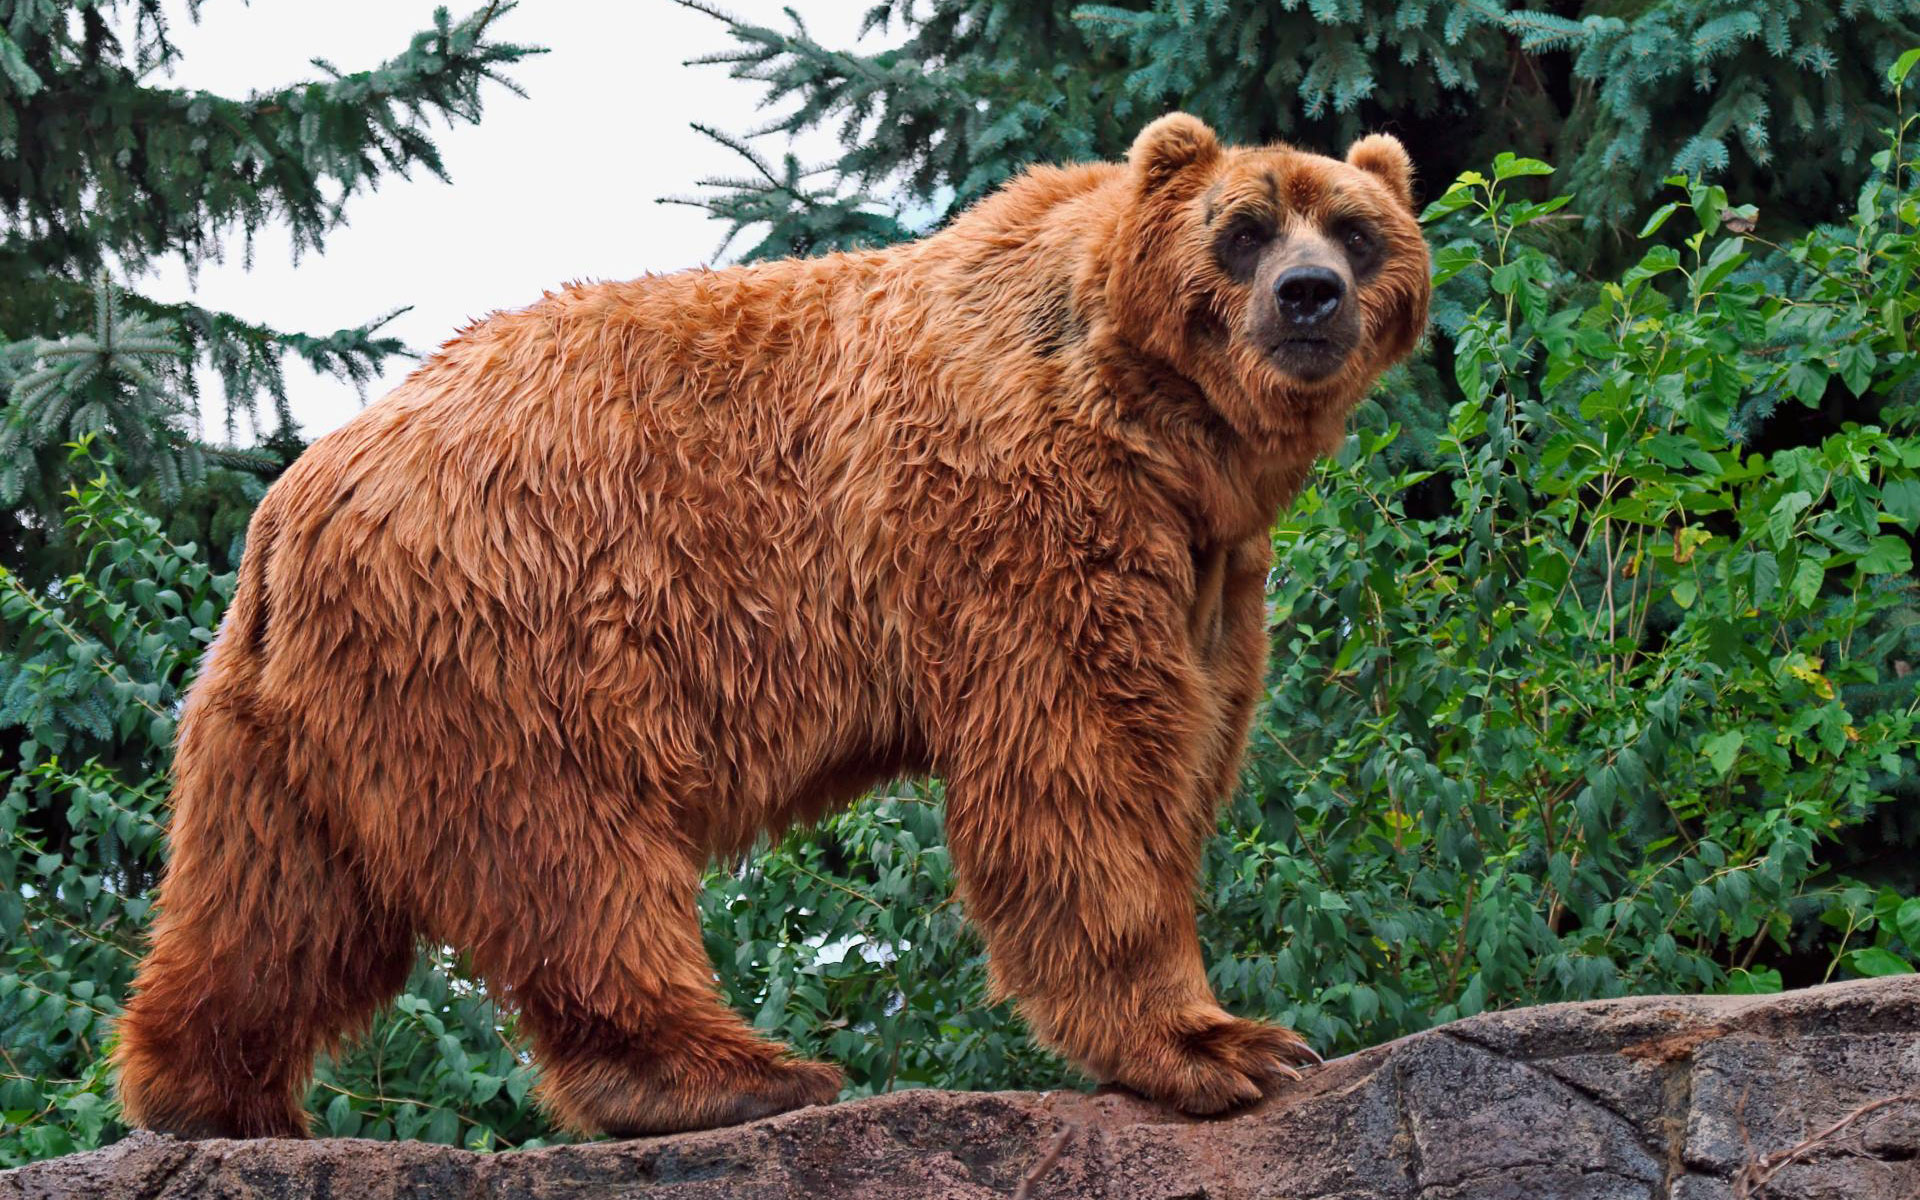 Kodiak Bear963461416 - Kodiak Bear - Kodiak, Bear